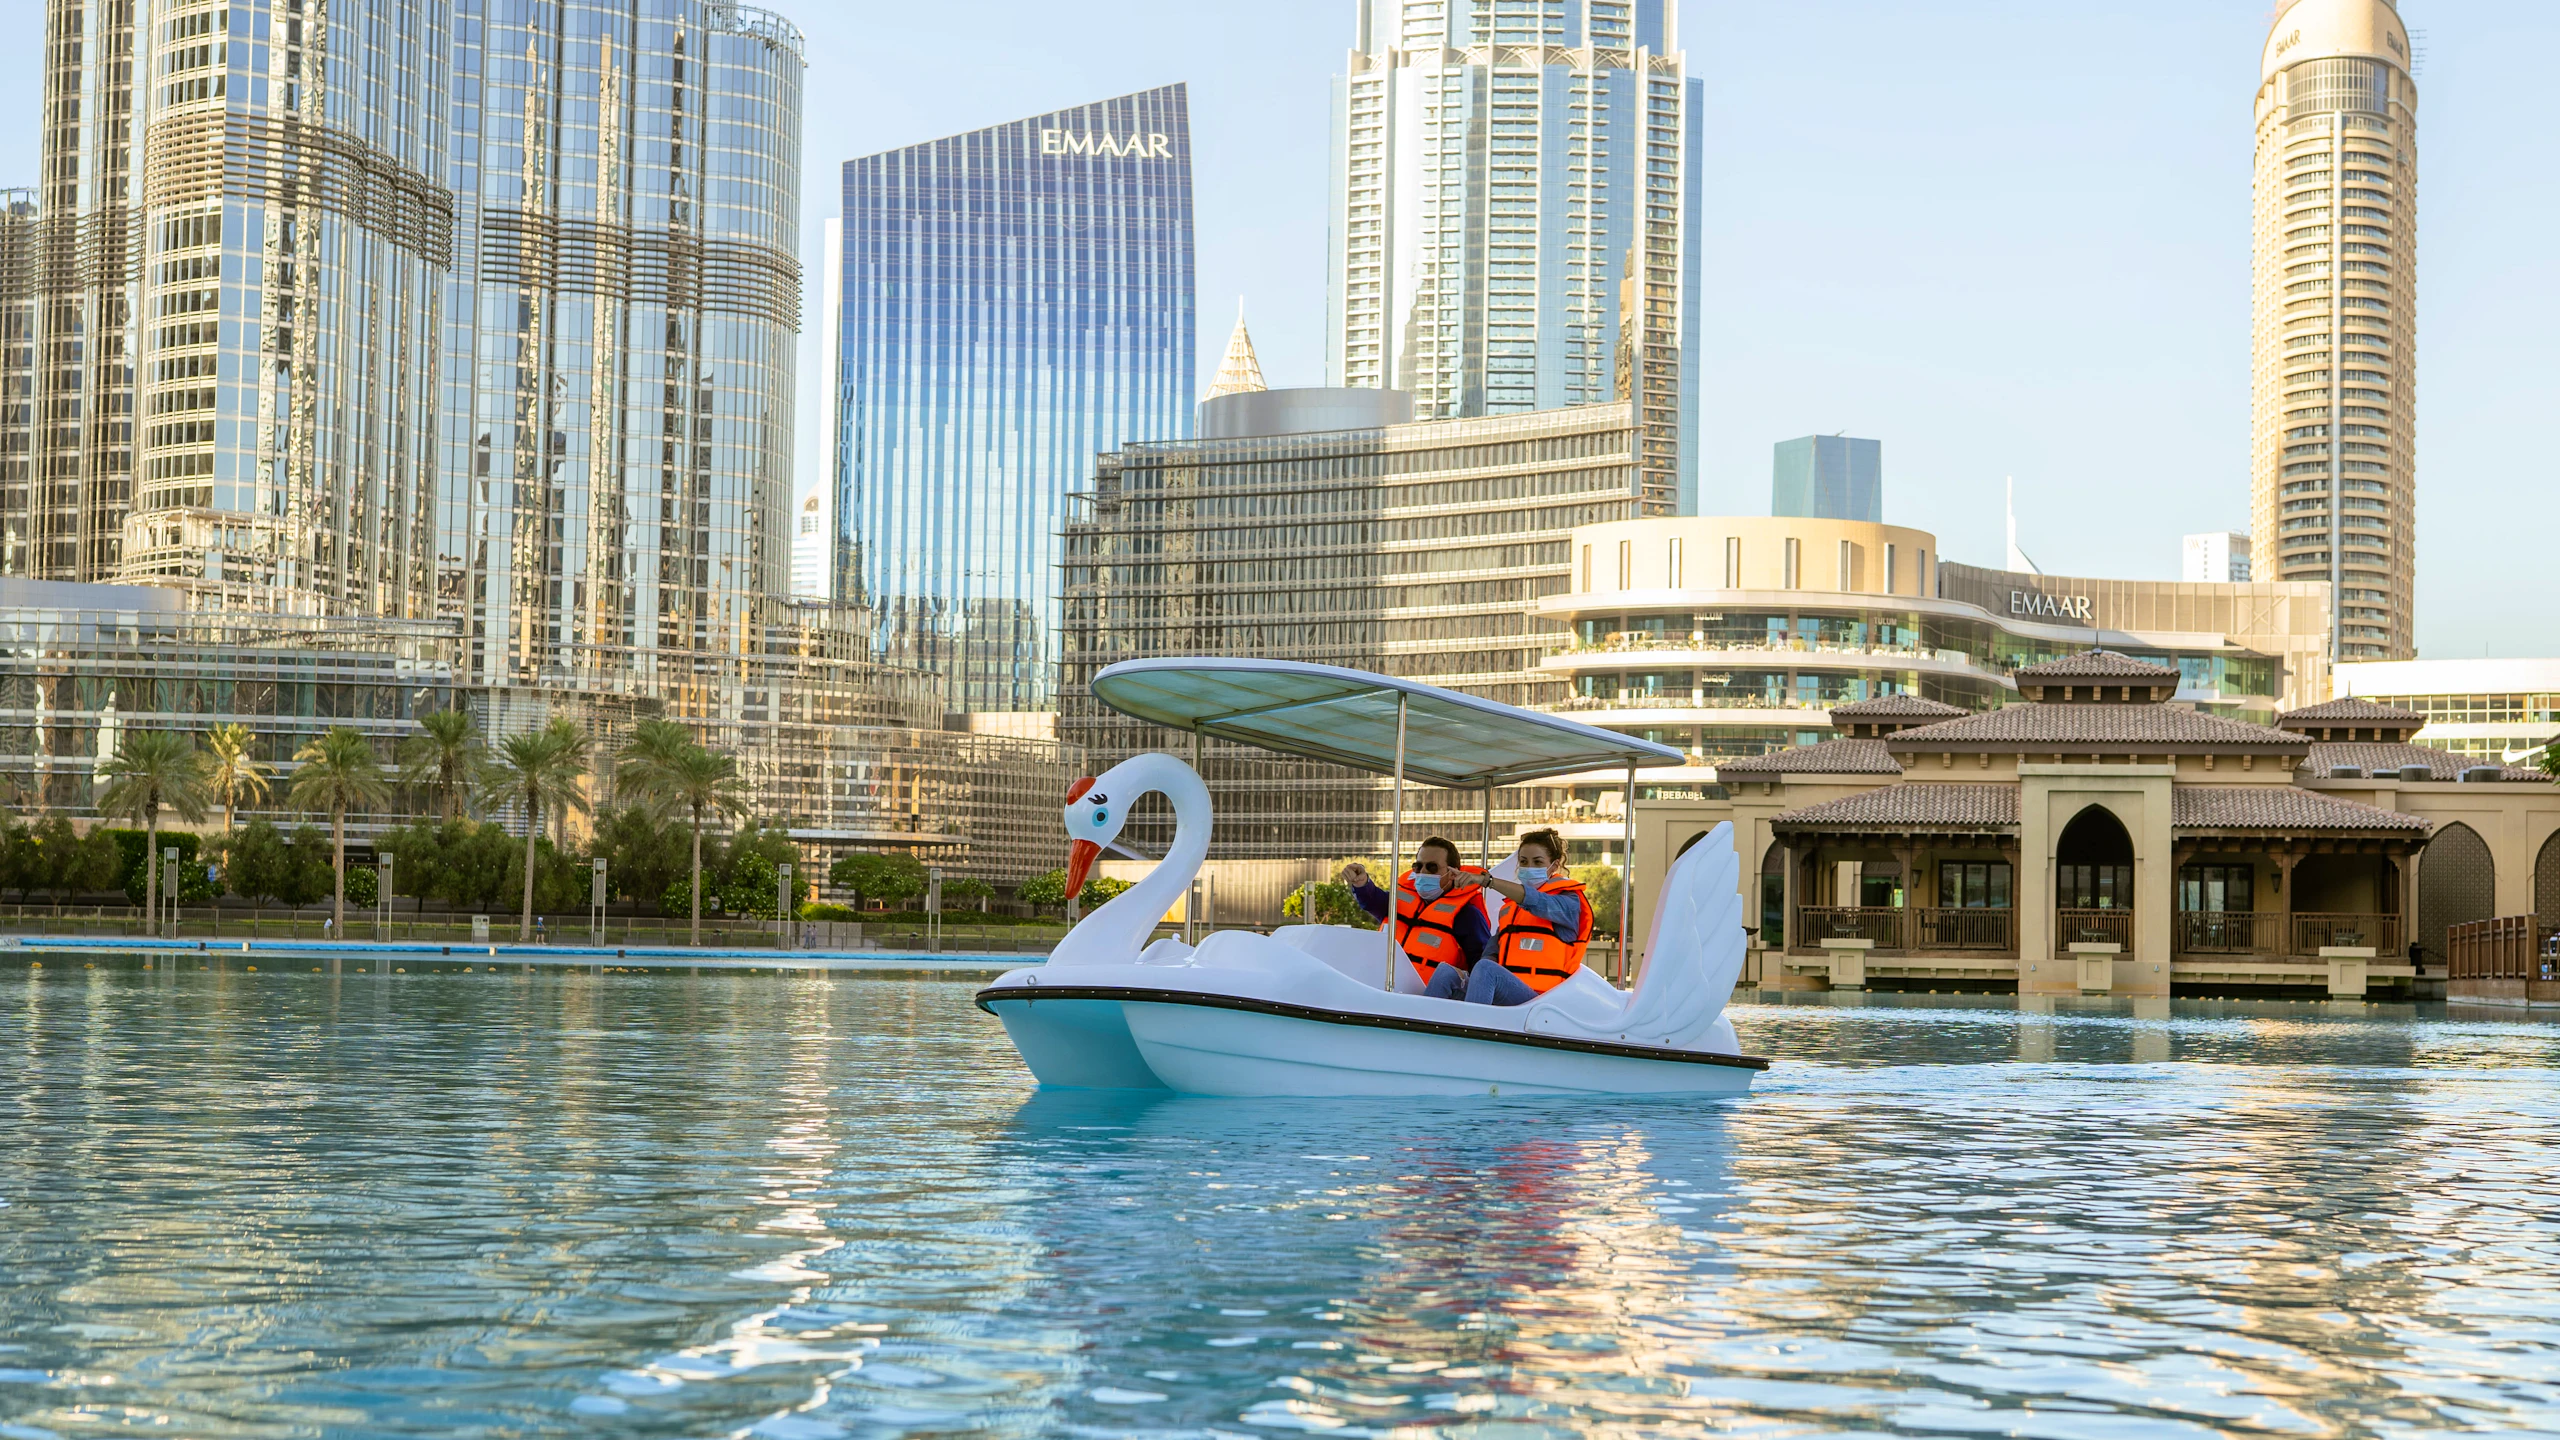 Dubai Fountain Pedal Swan Boats Discount